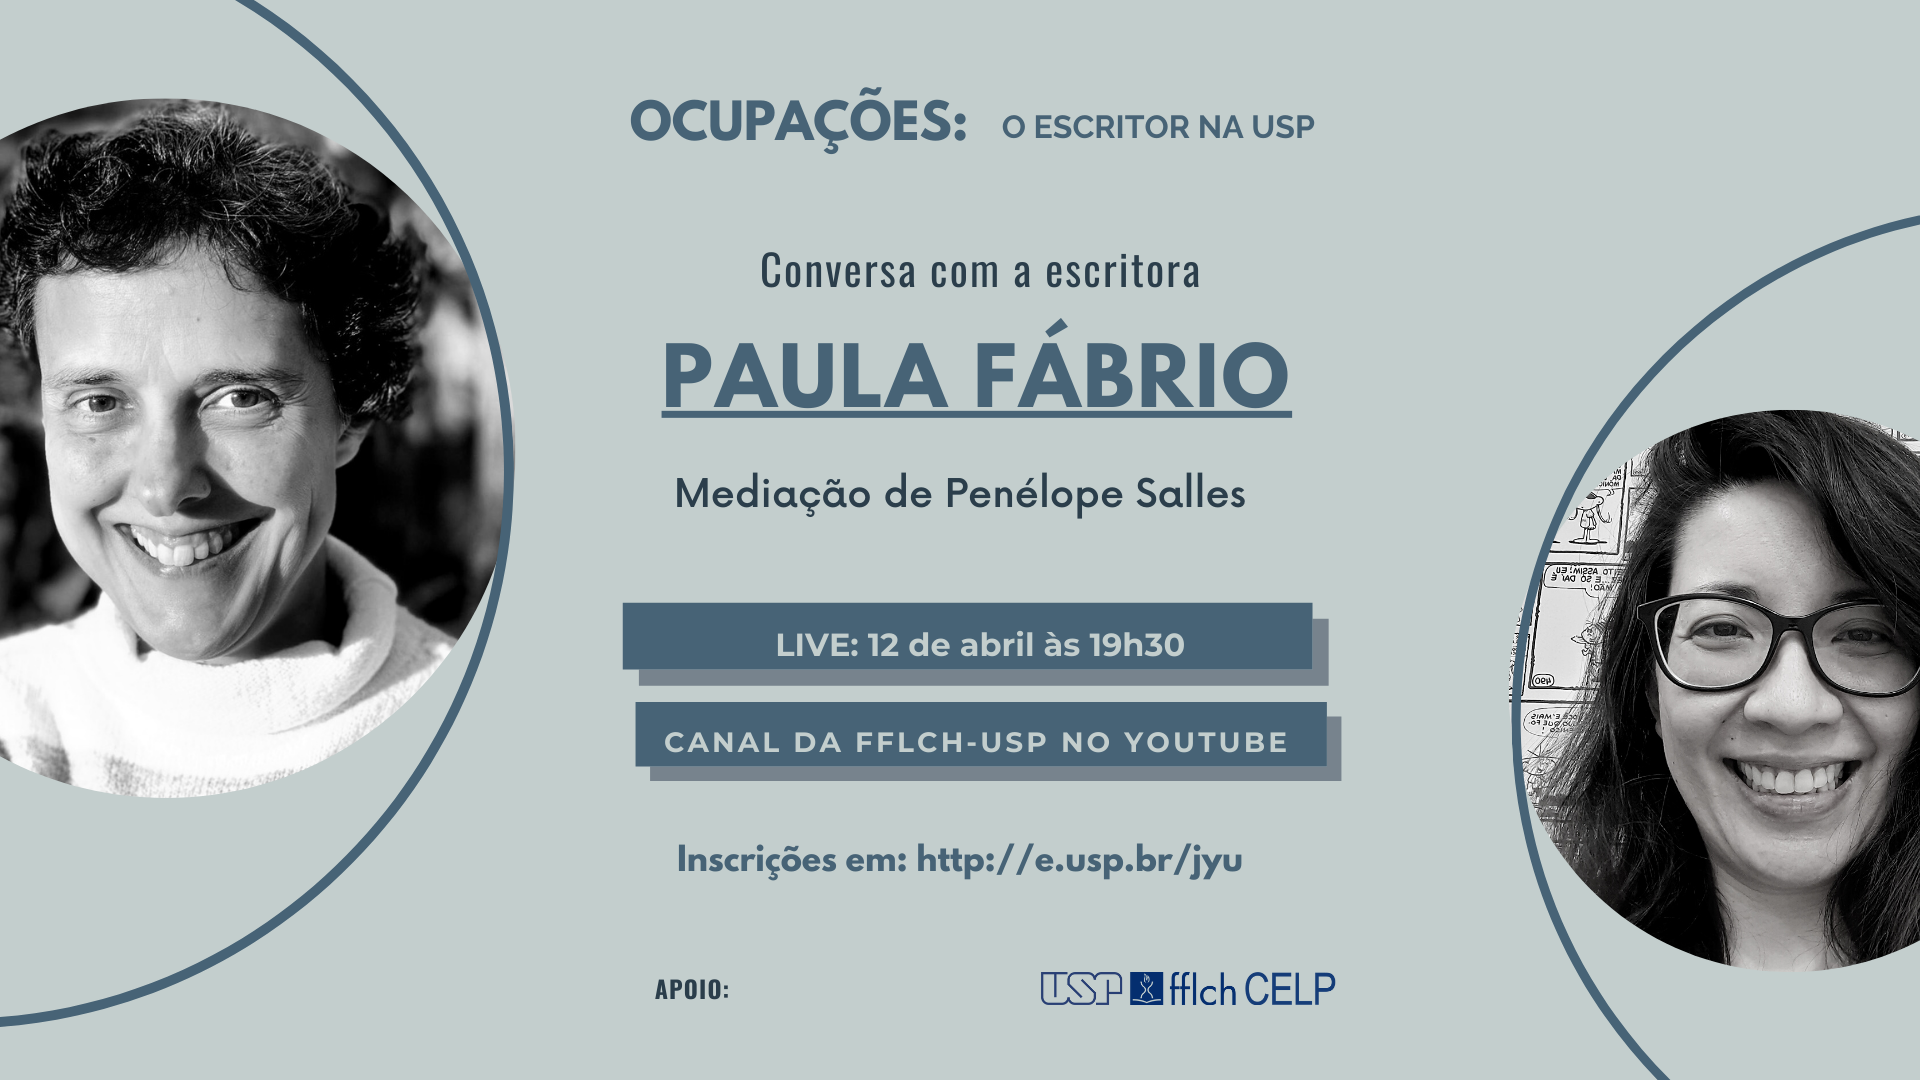 Ocupações - Paula Fábrio (4)_0.png